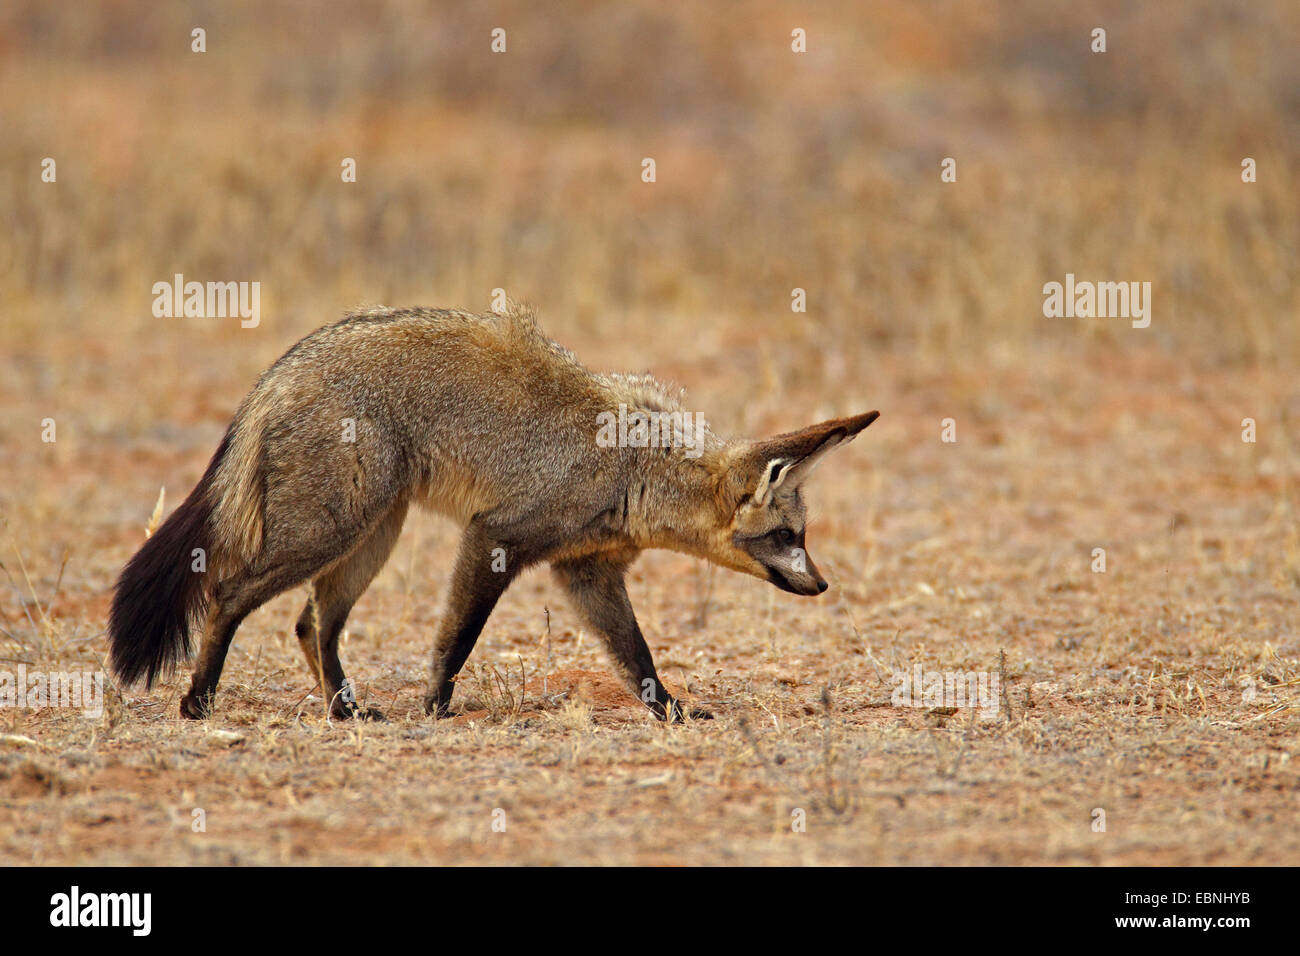 Hieb-eared Fuchs (Otocyon Megalotis), die auf der Suche nach Nahrung auf den Boden, Südafrika, Kgalagadi Transfrontier National Park Stockfoto